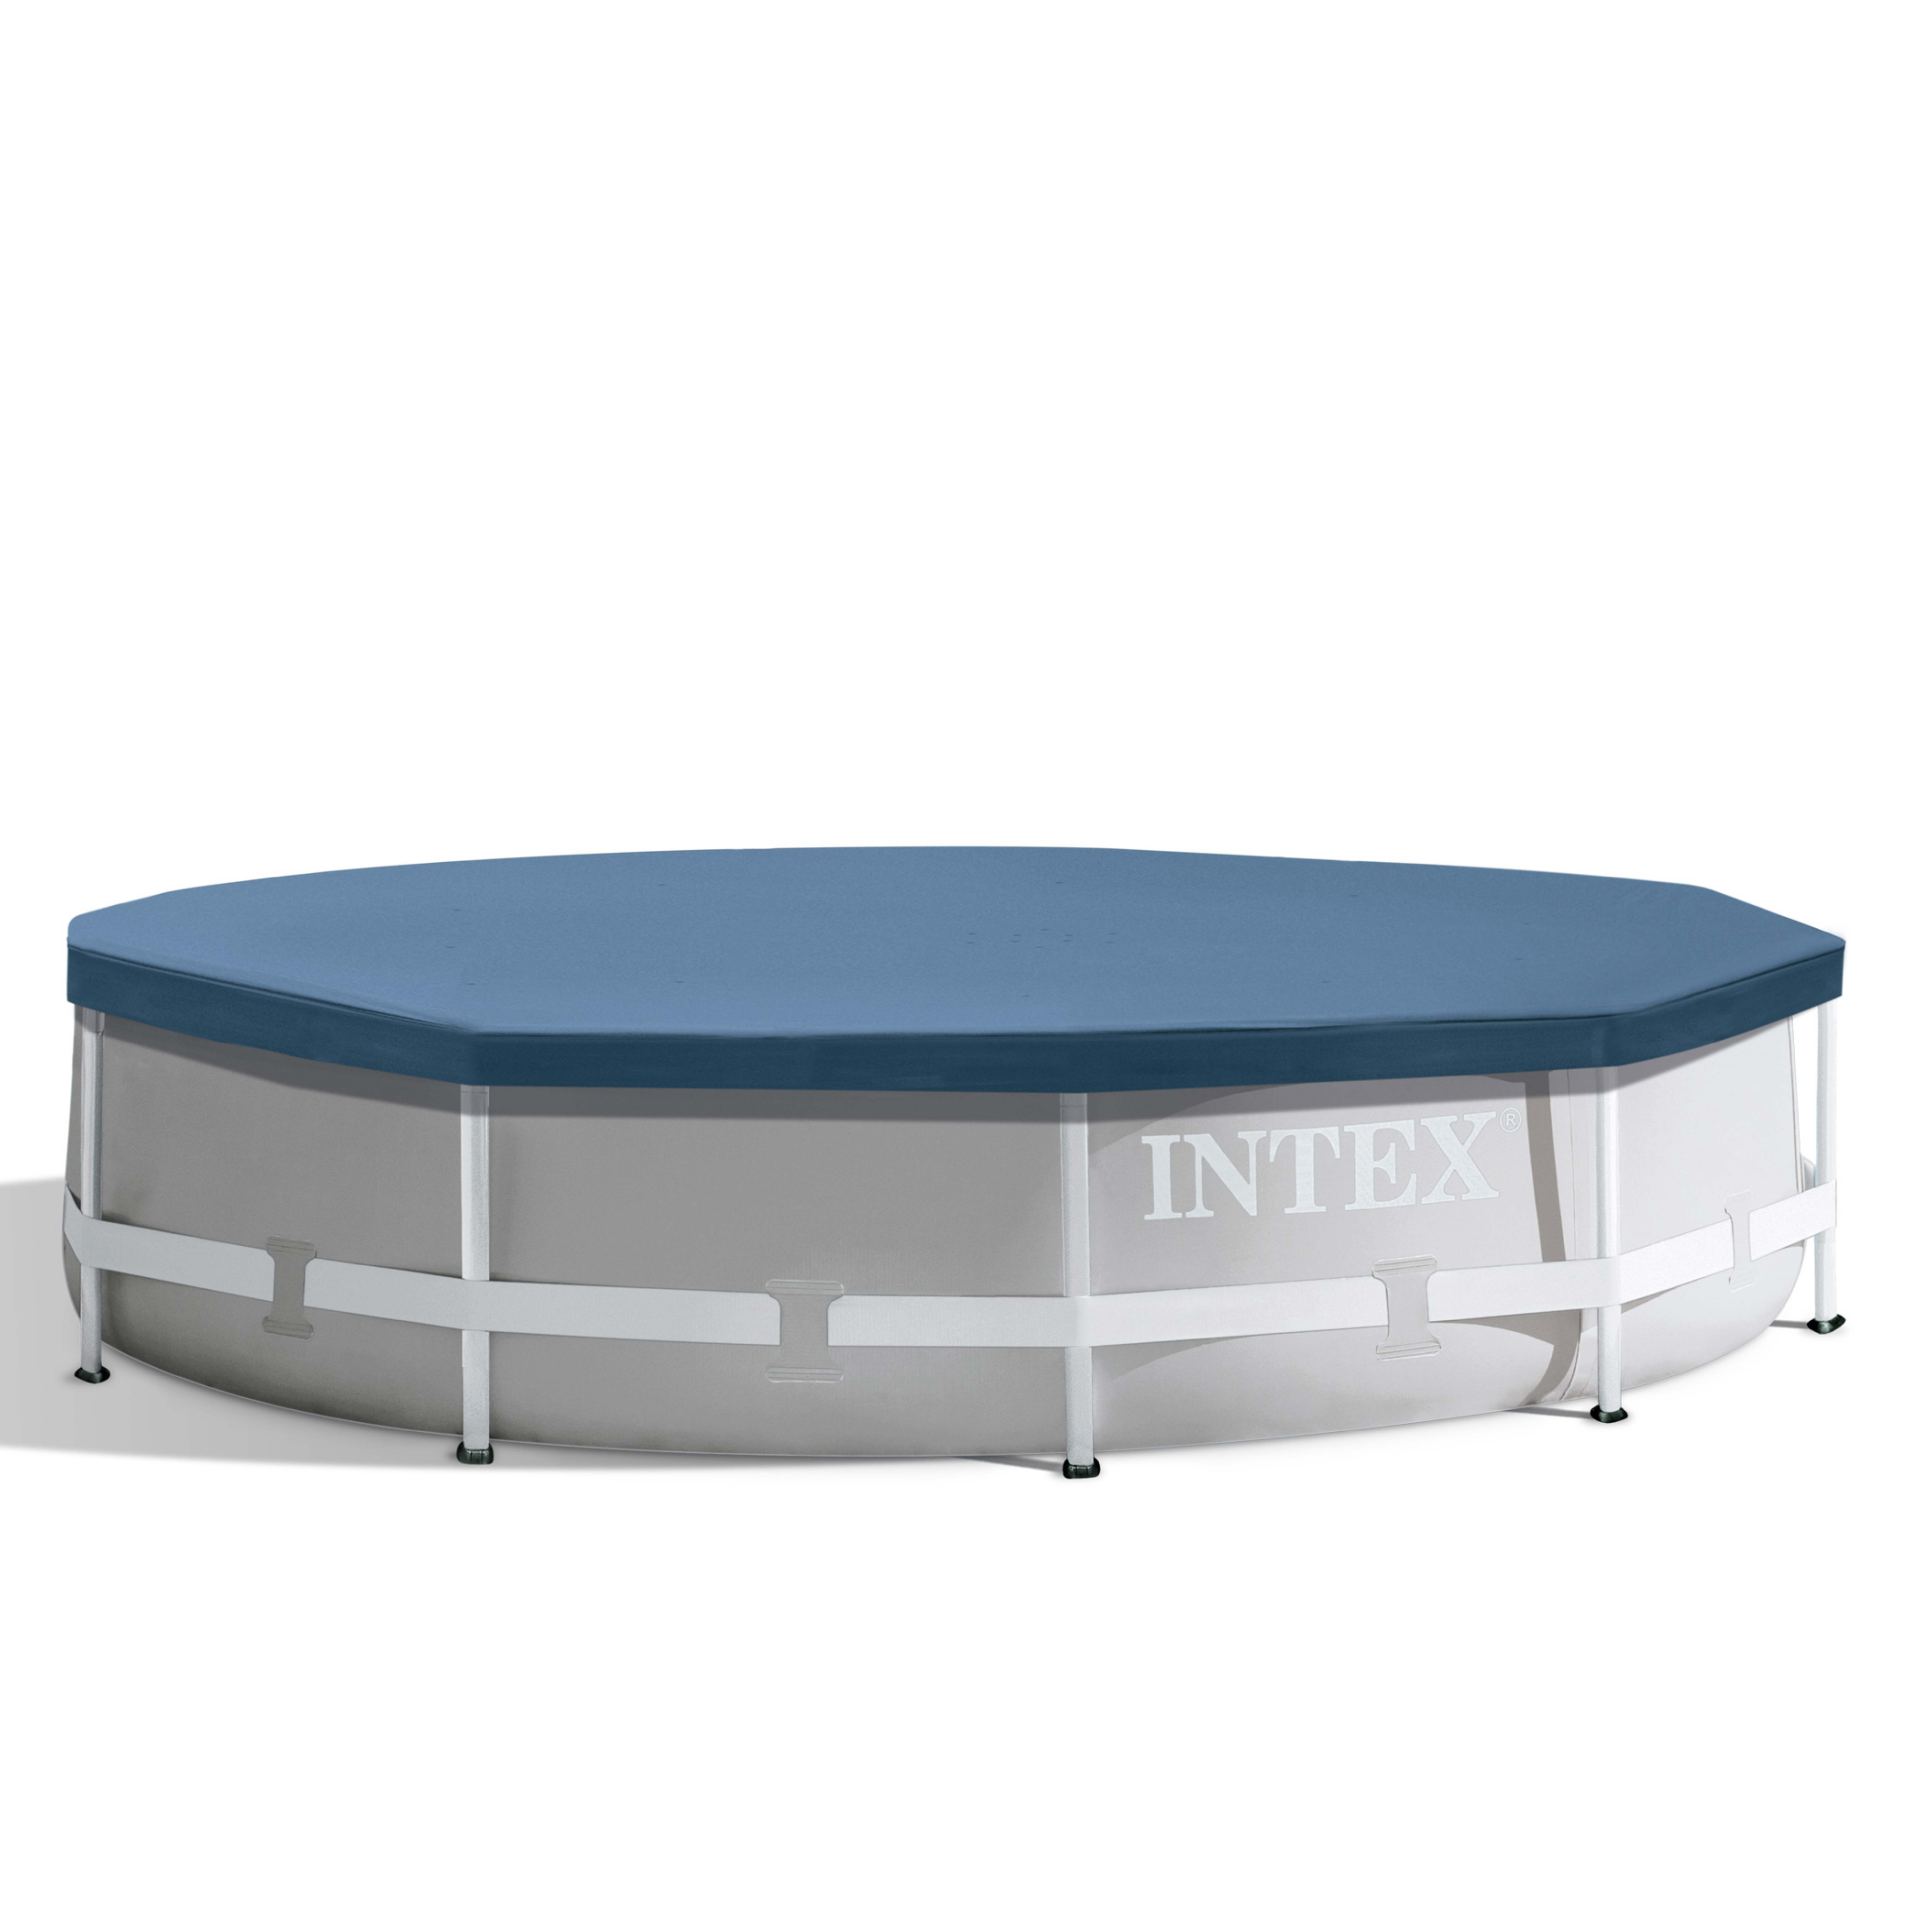 Intex round pool cover 366cm x 25cm